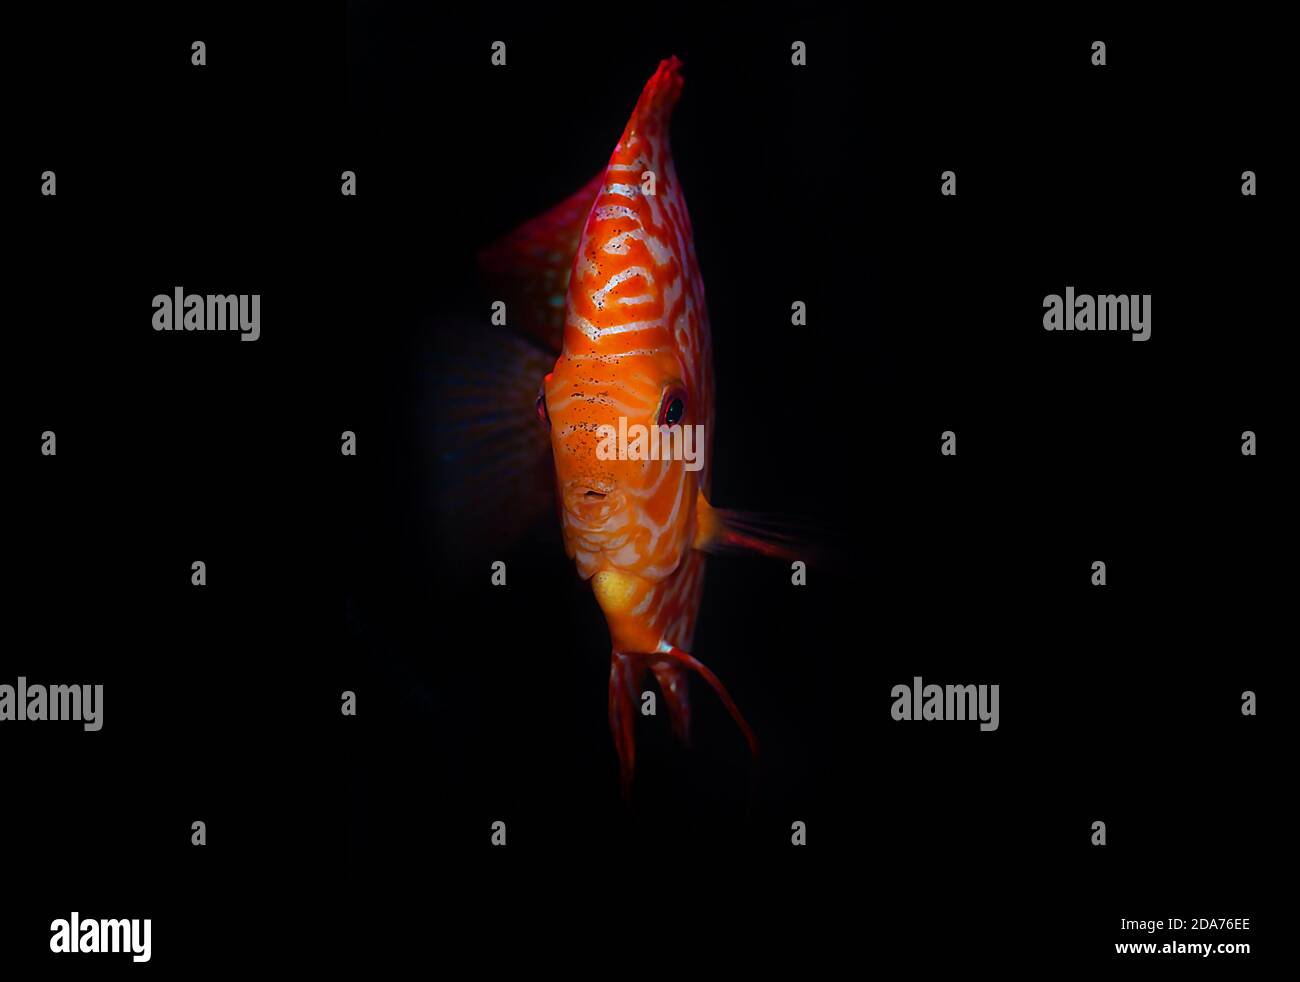 Stardust Discus fish - (Symphysodon aequifasciatus) Stock Photo